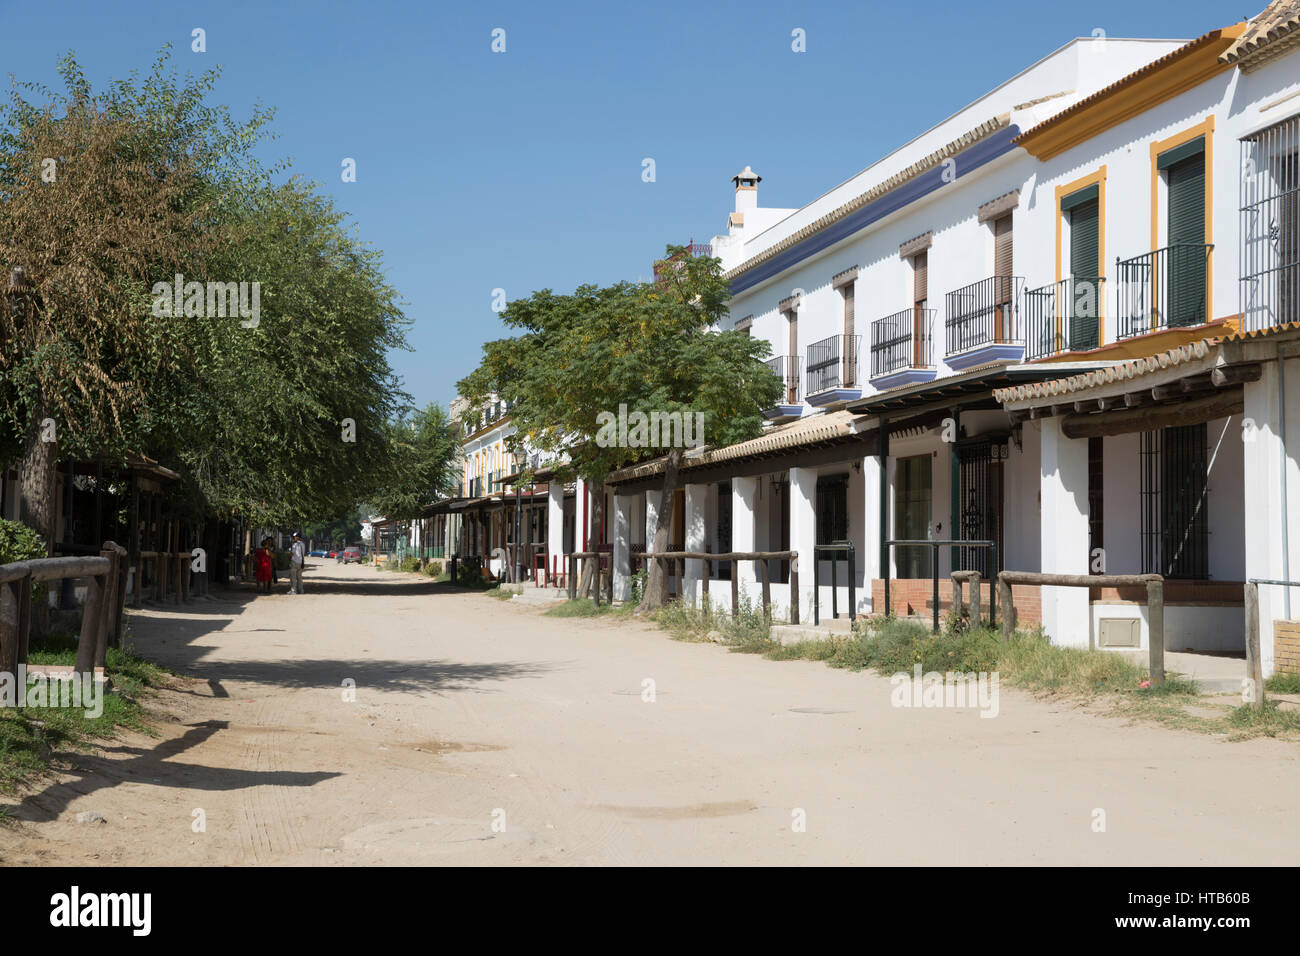 Las calles de arena y la hermandad de las viviendas, El Rocío, la provincia de Huelva, Andalucía, España, Europa Foto de stock